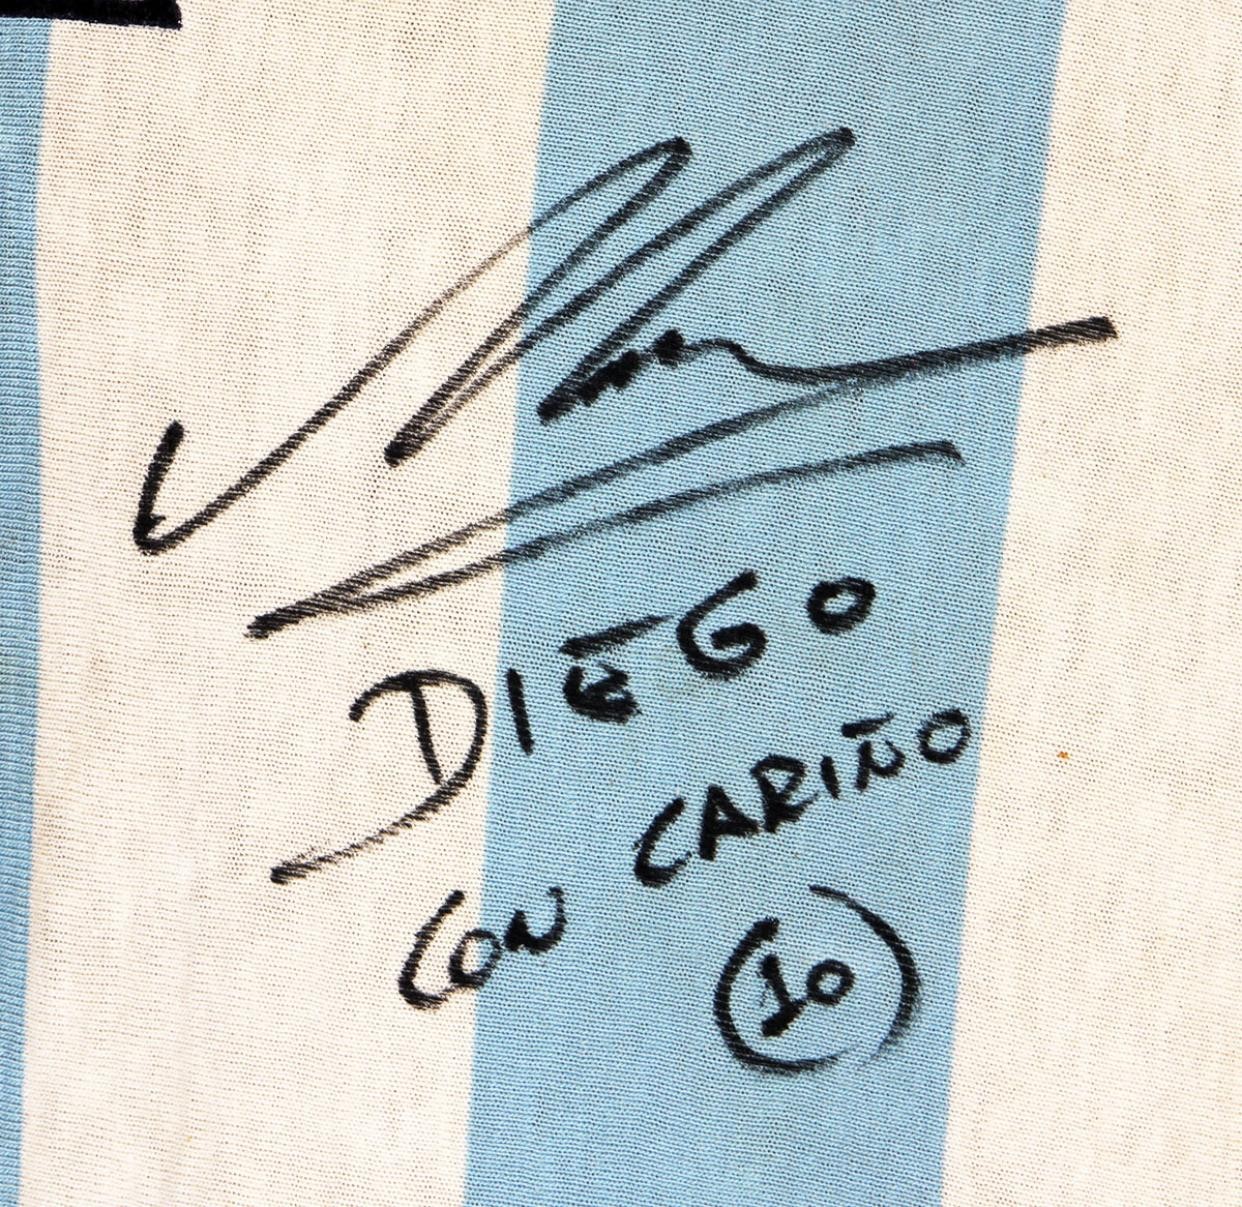 Camisa usada por Maradona em seu primeira copa do mundo (Foto: Reprodução/gottahaverocknroll.com)